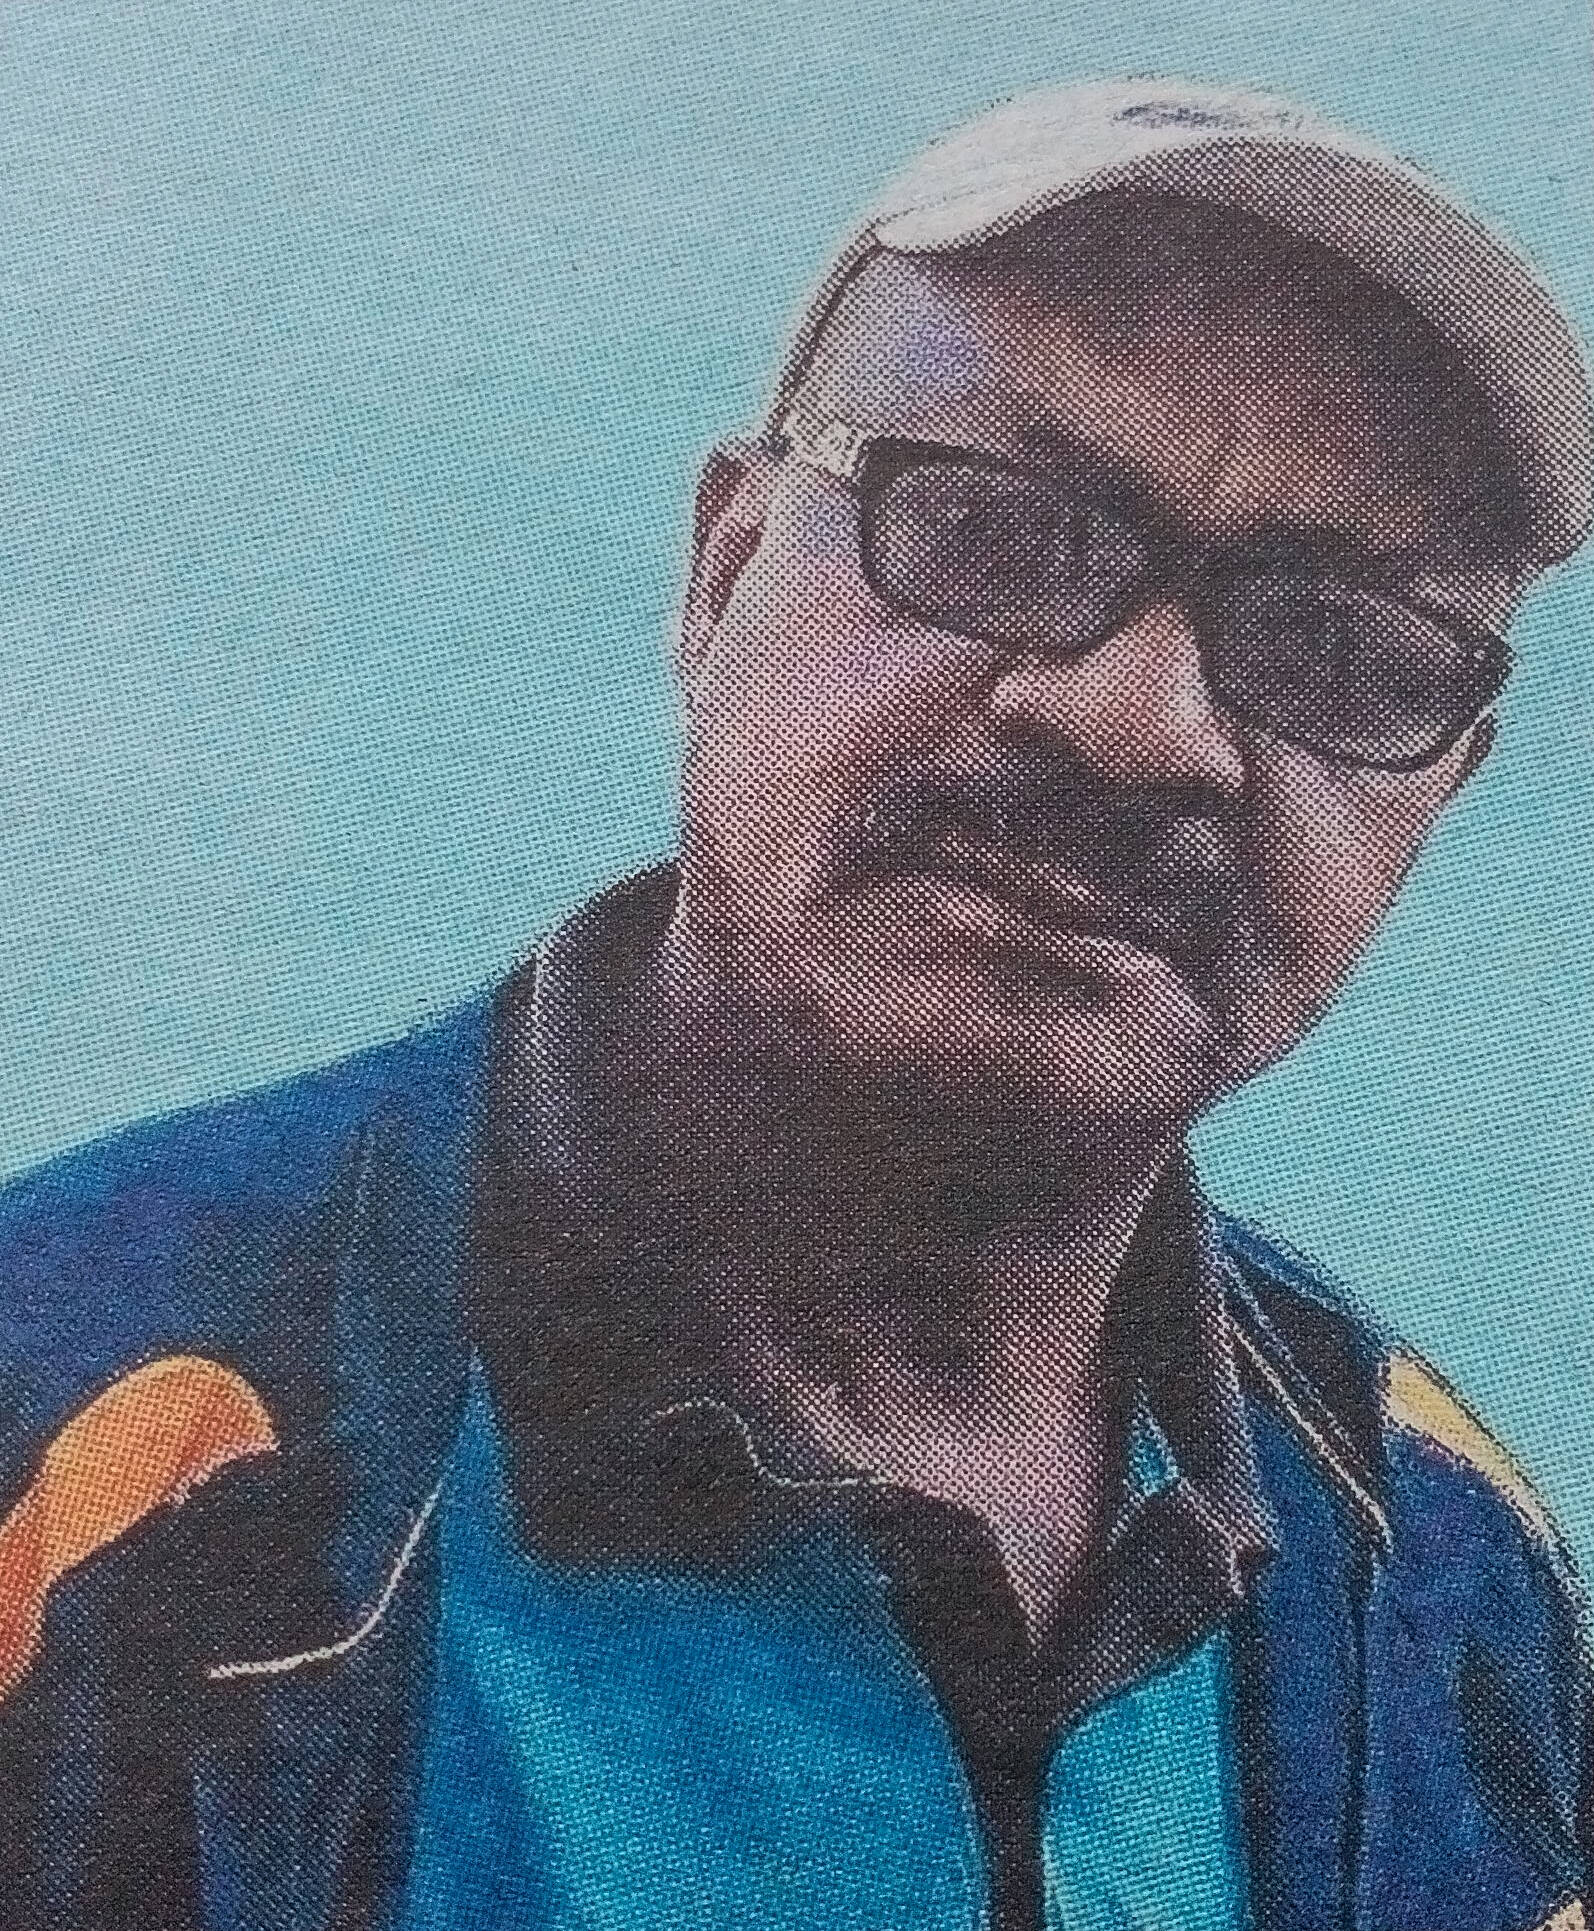 Obituary Image of Mark Mbugua Wachira